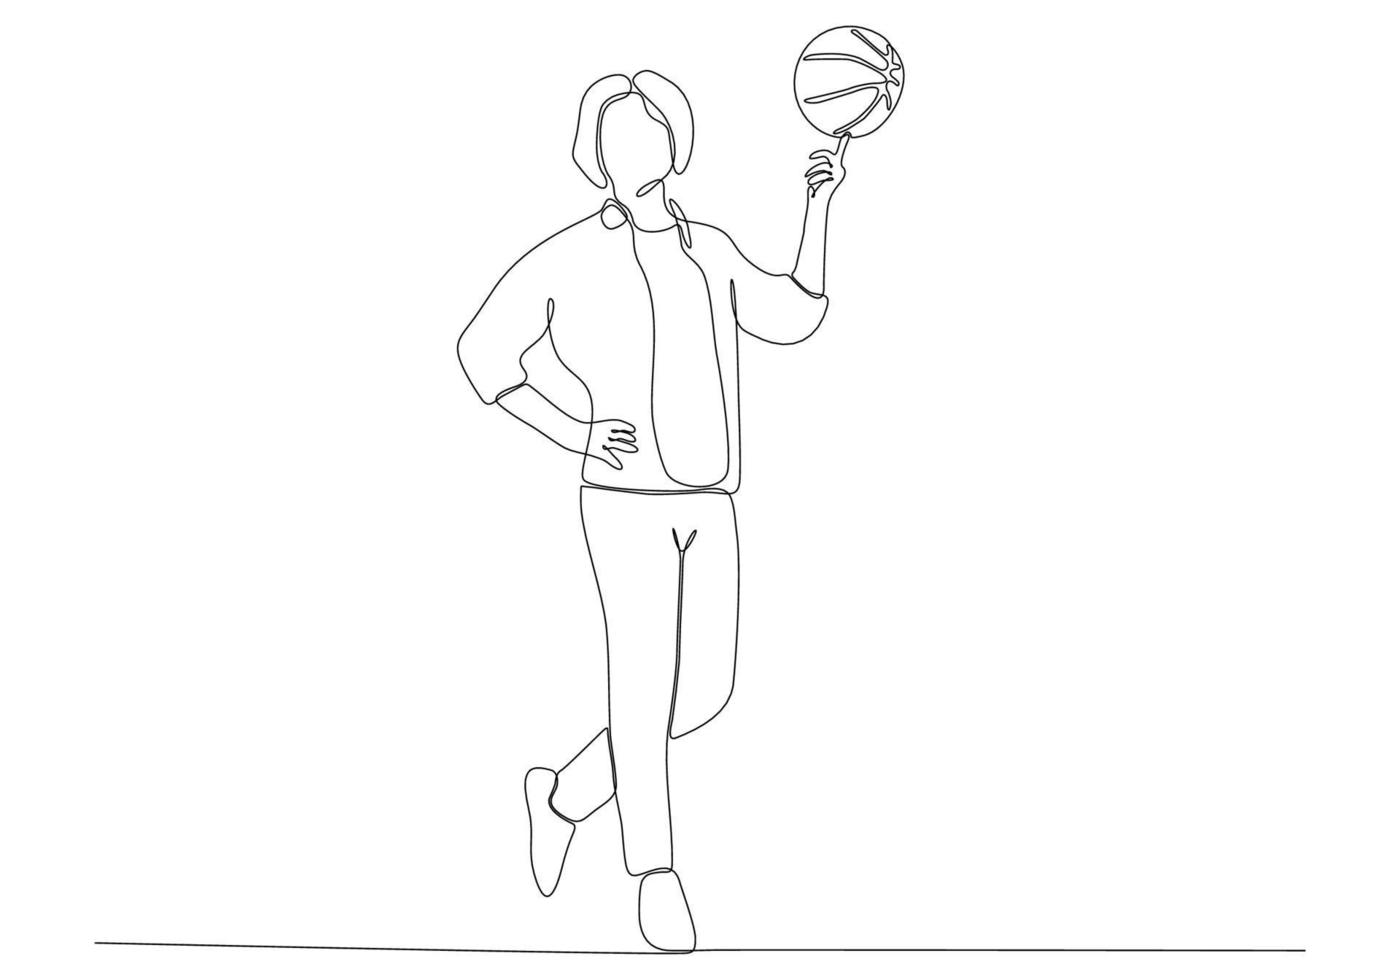 dessin au trait continu d'un homme jouant au basket vecteur